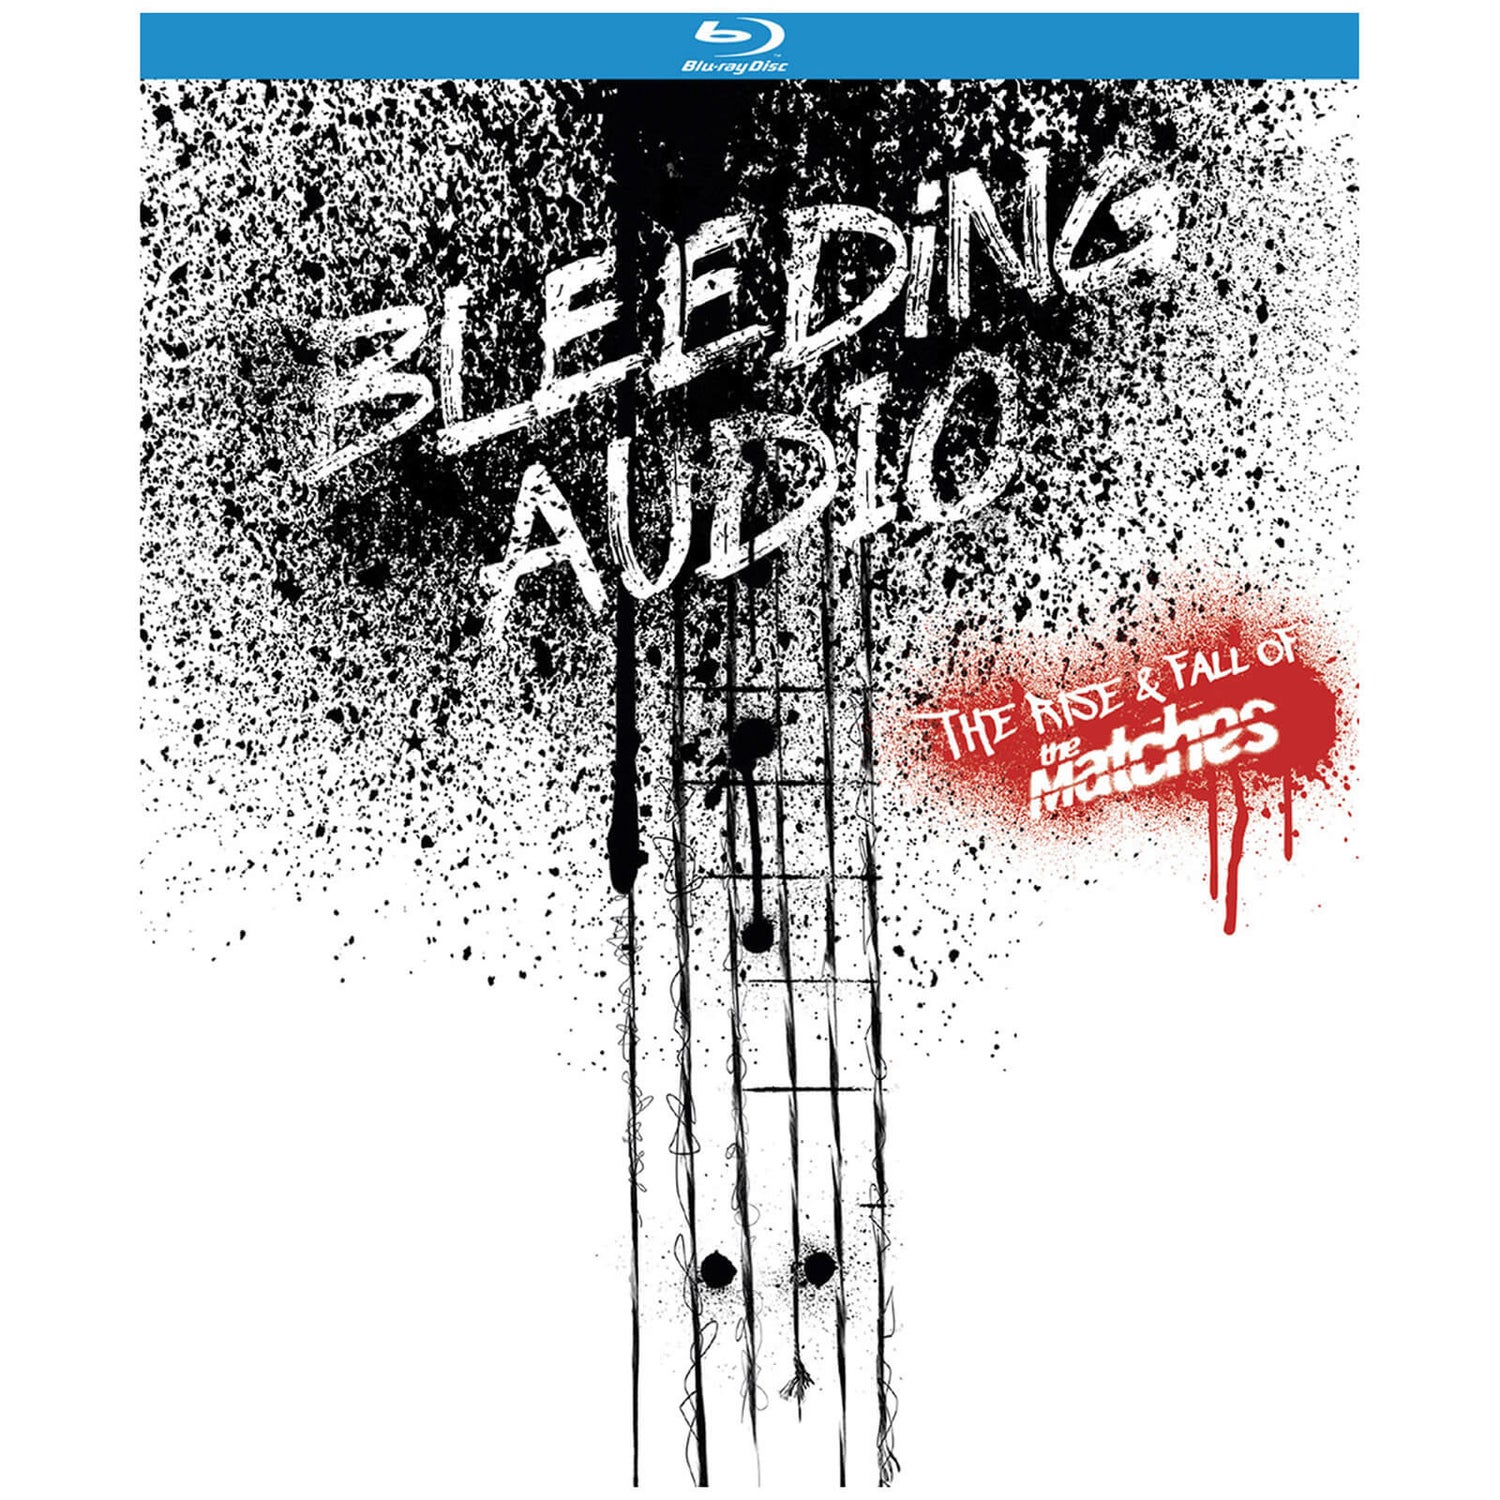 Bleeding Audio